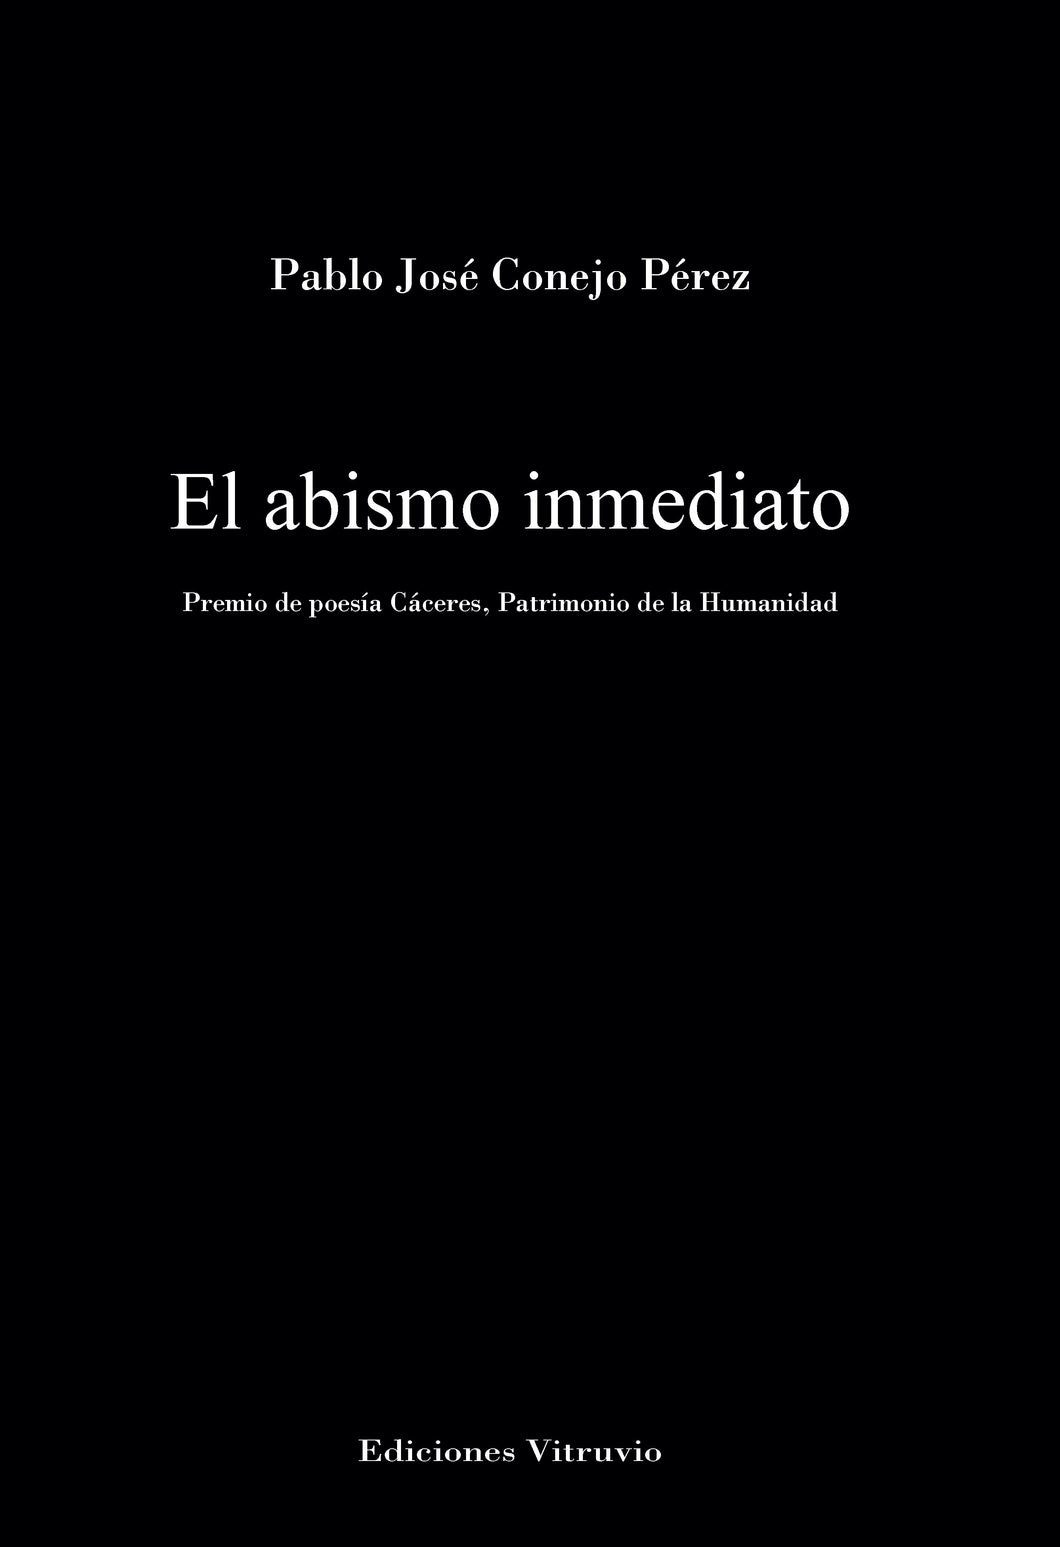 El abismo inmediato, de Pablo Conejo Pérez